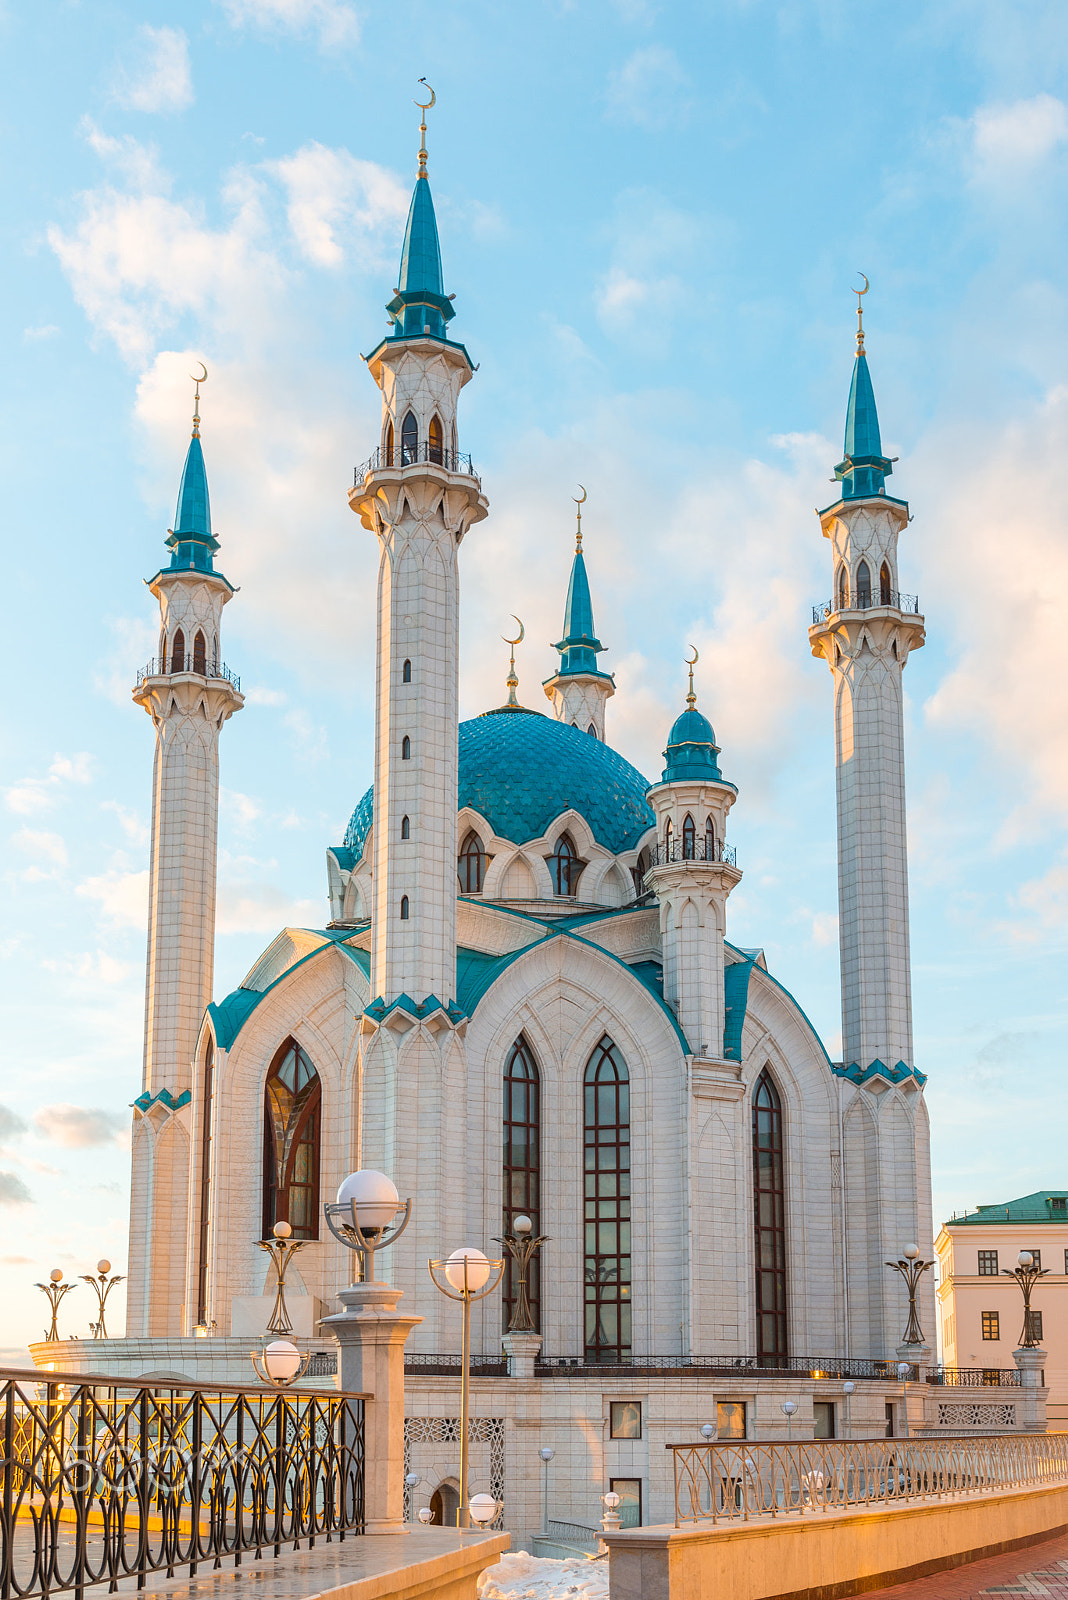 Nikon D600 sample photo. Kul-sharif mosque in kazan kremlin in tatarstan, russia. at sunset photography